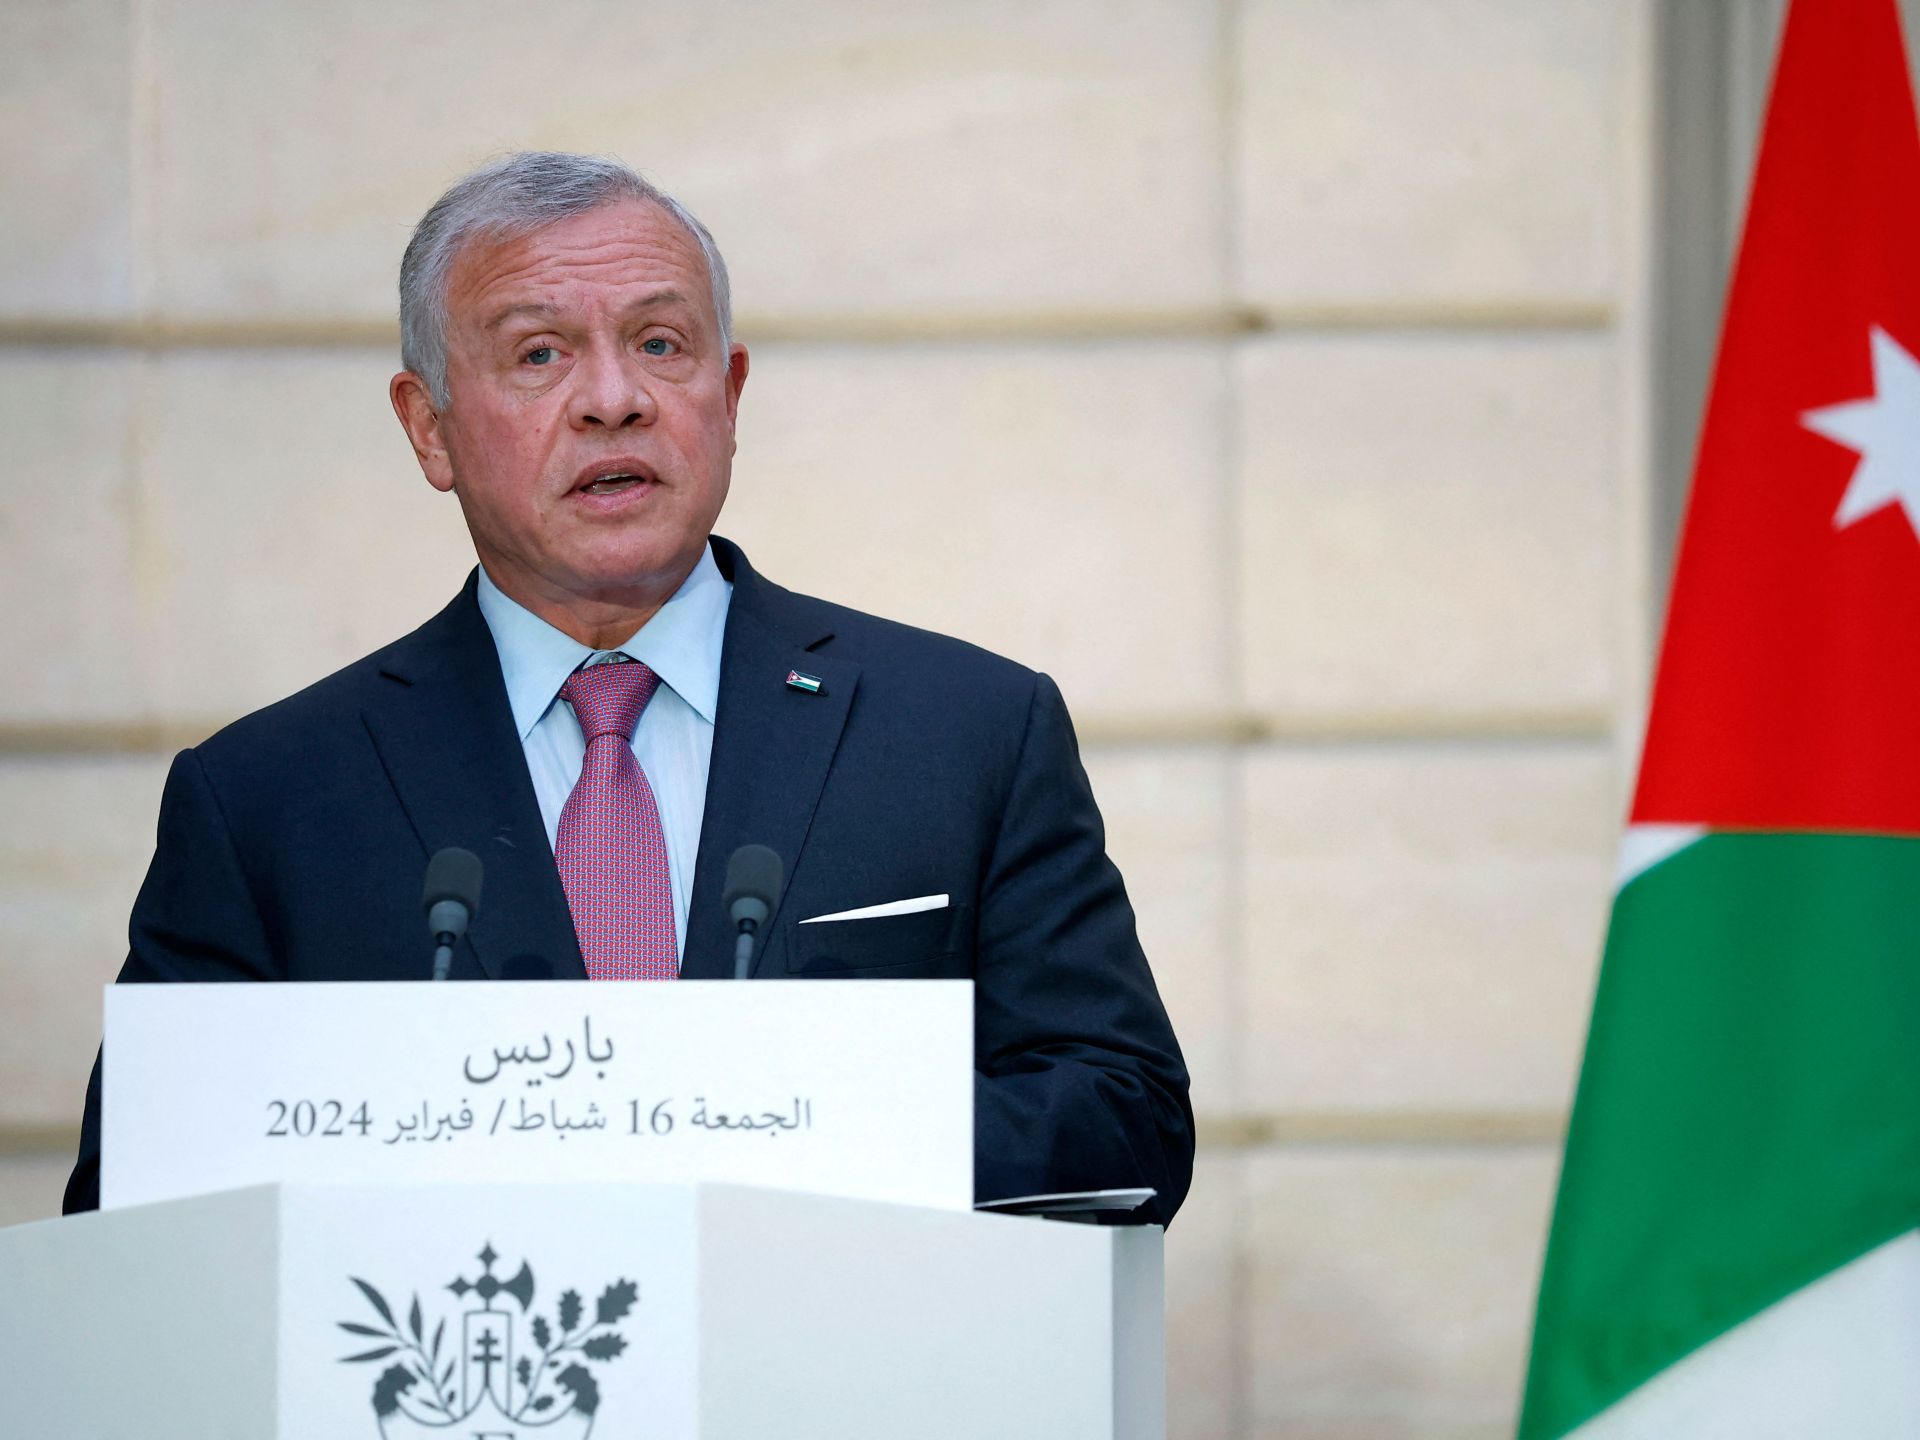 ملك الأردن يدعو لوقف الاعتداءات بالقدس وإنهاء الحرب بغزة | أخبار – البوكس نيوز